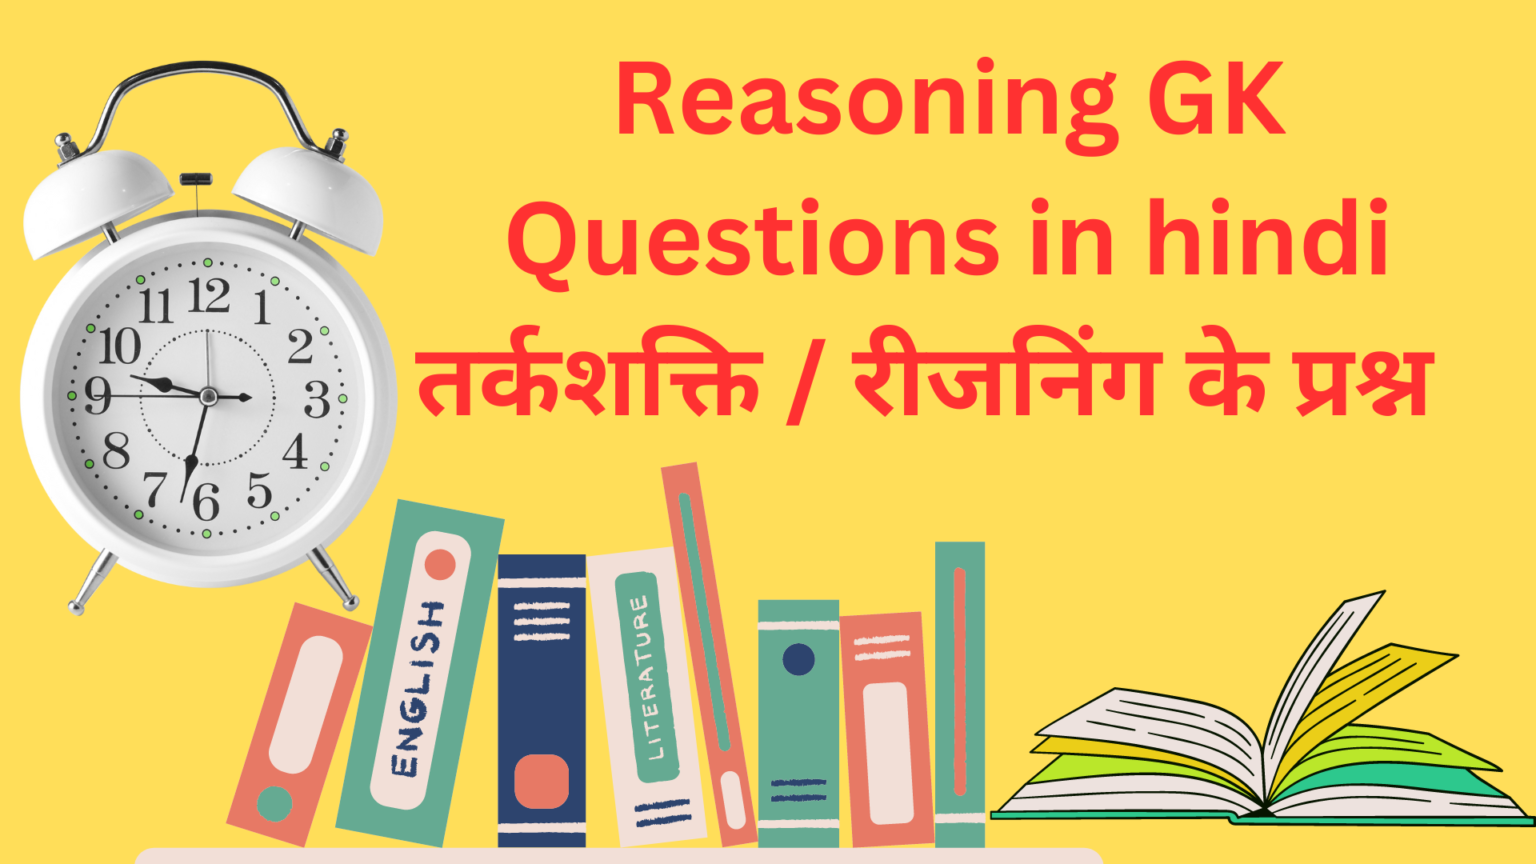 Reasoning GK Questions in hindi तर्कशक्ति / रीजनिंग के प्रश्न